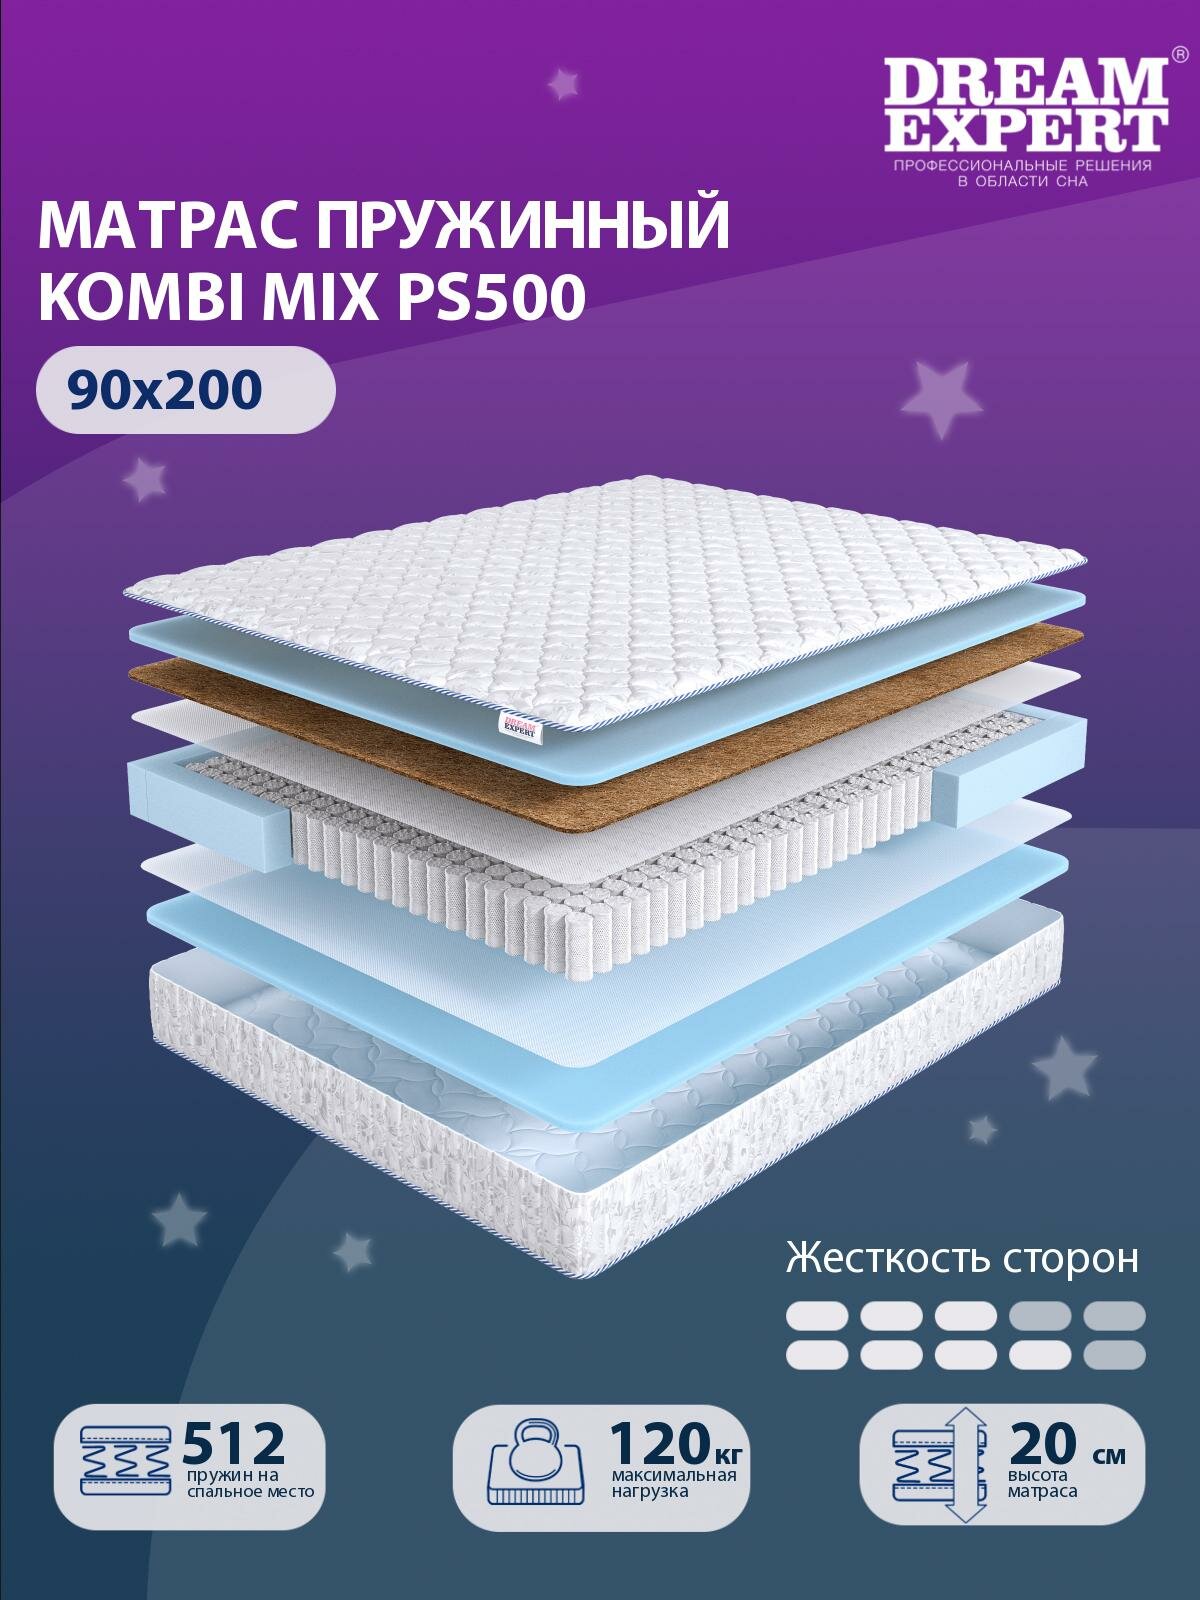 Матрас DreamExpert Kombi Mix PS500 средней и выше средней жесткости, односпальный, независимый пружинный блок, на кровать 90x200